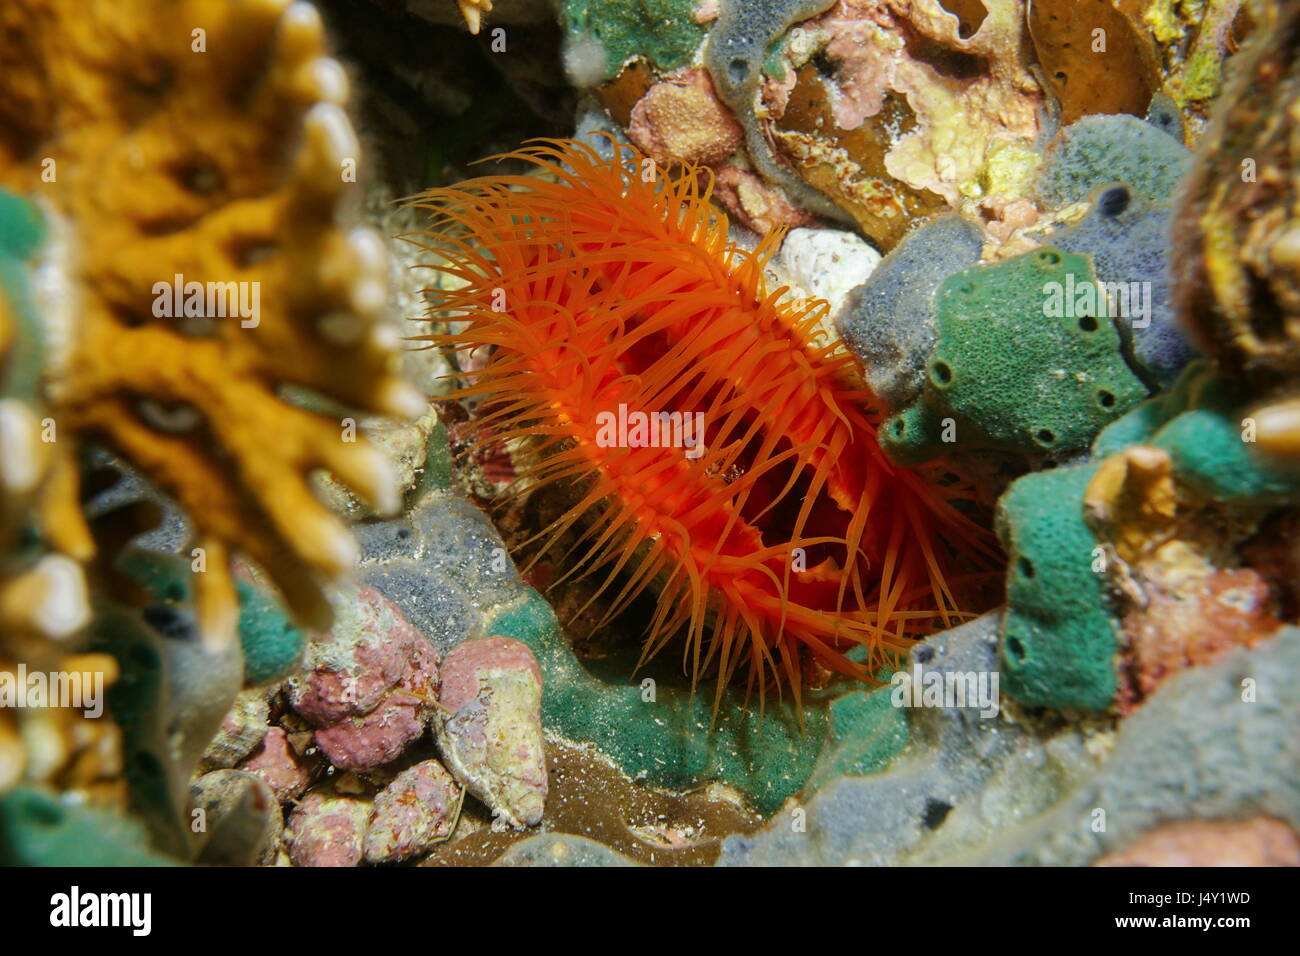 Mollusque bivalve marin Flame scallop, Ctenoides scaber, Fonds sous-marins dans la mer des Caraïbes Banque D'Images